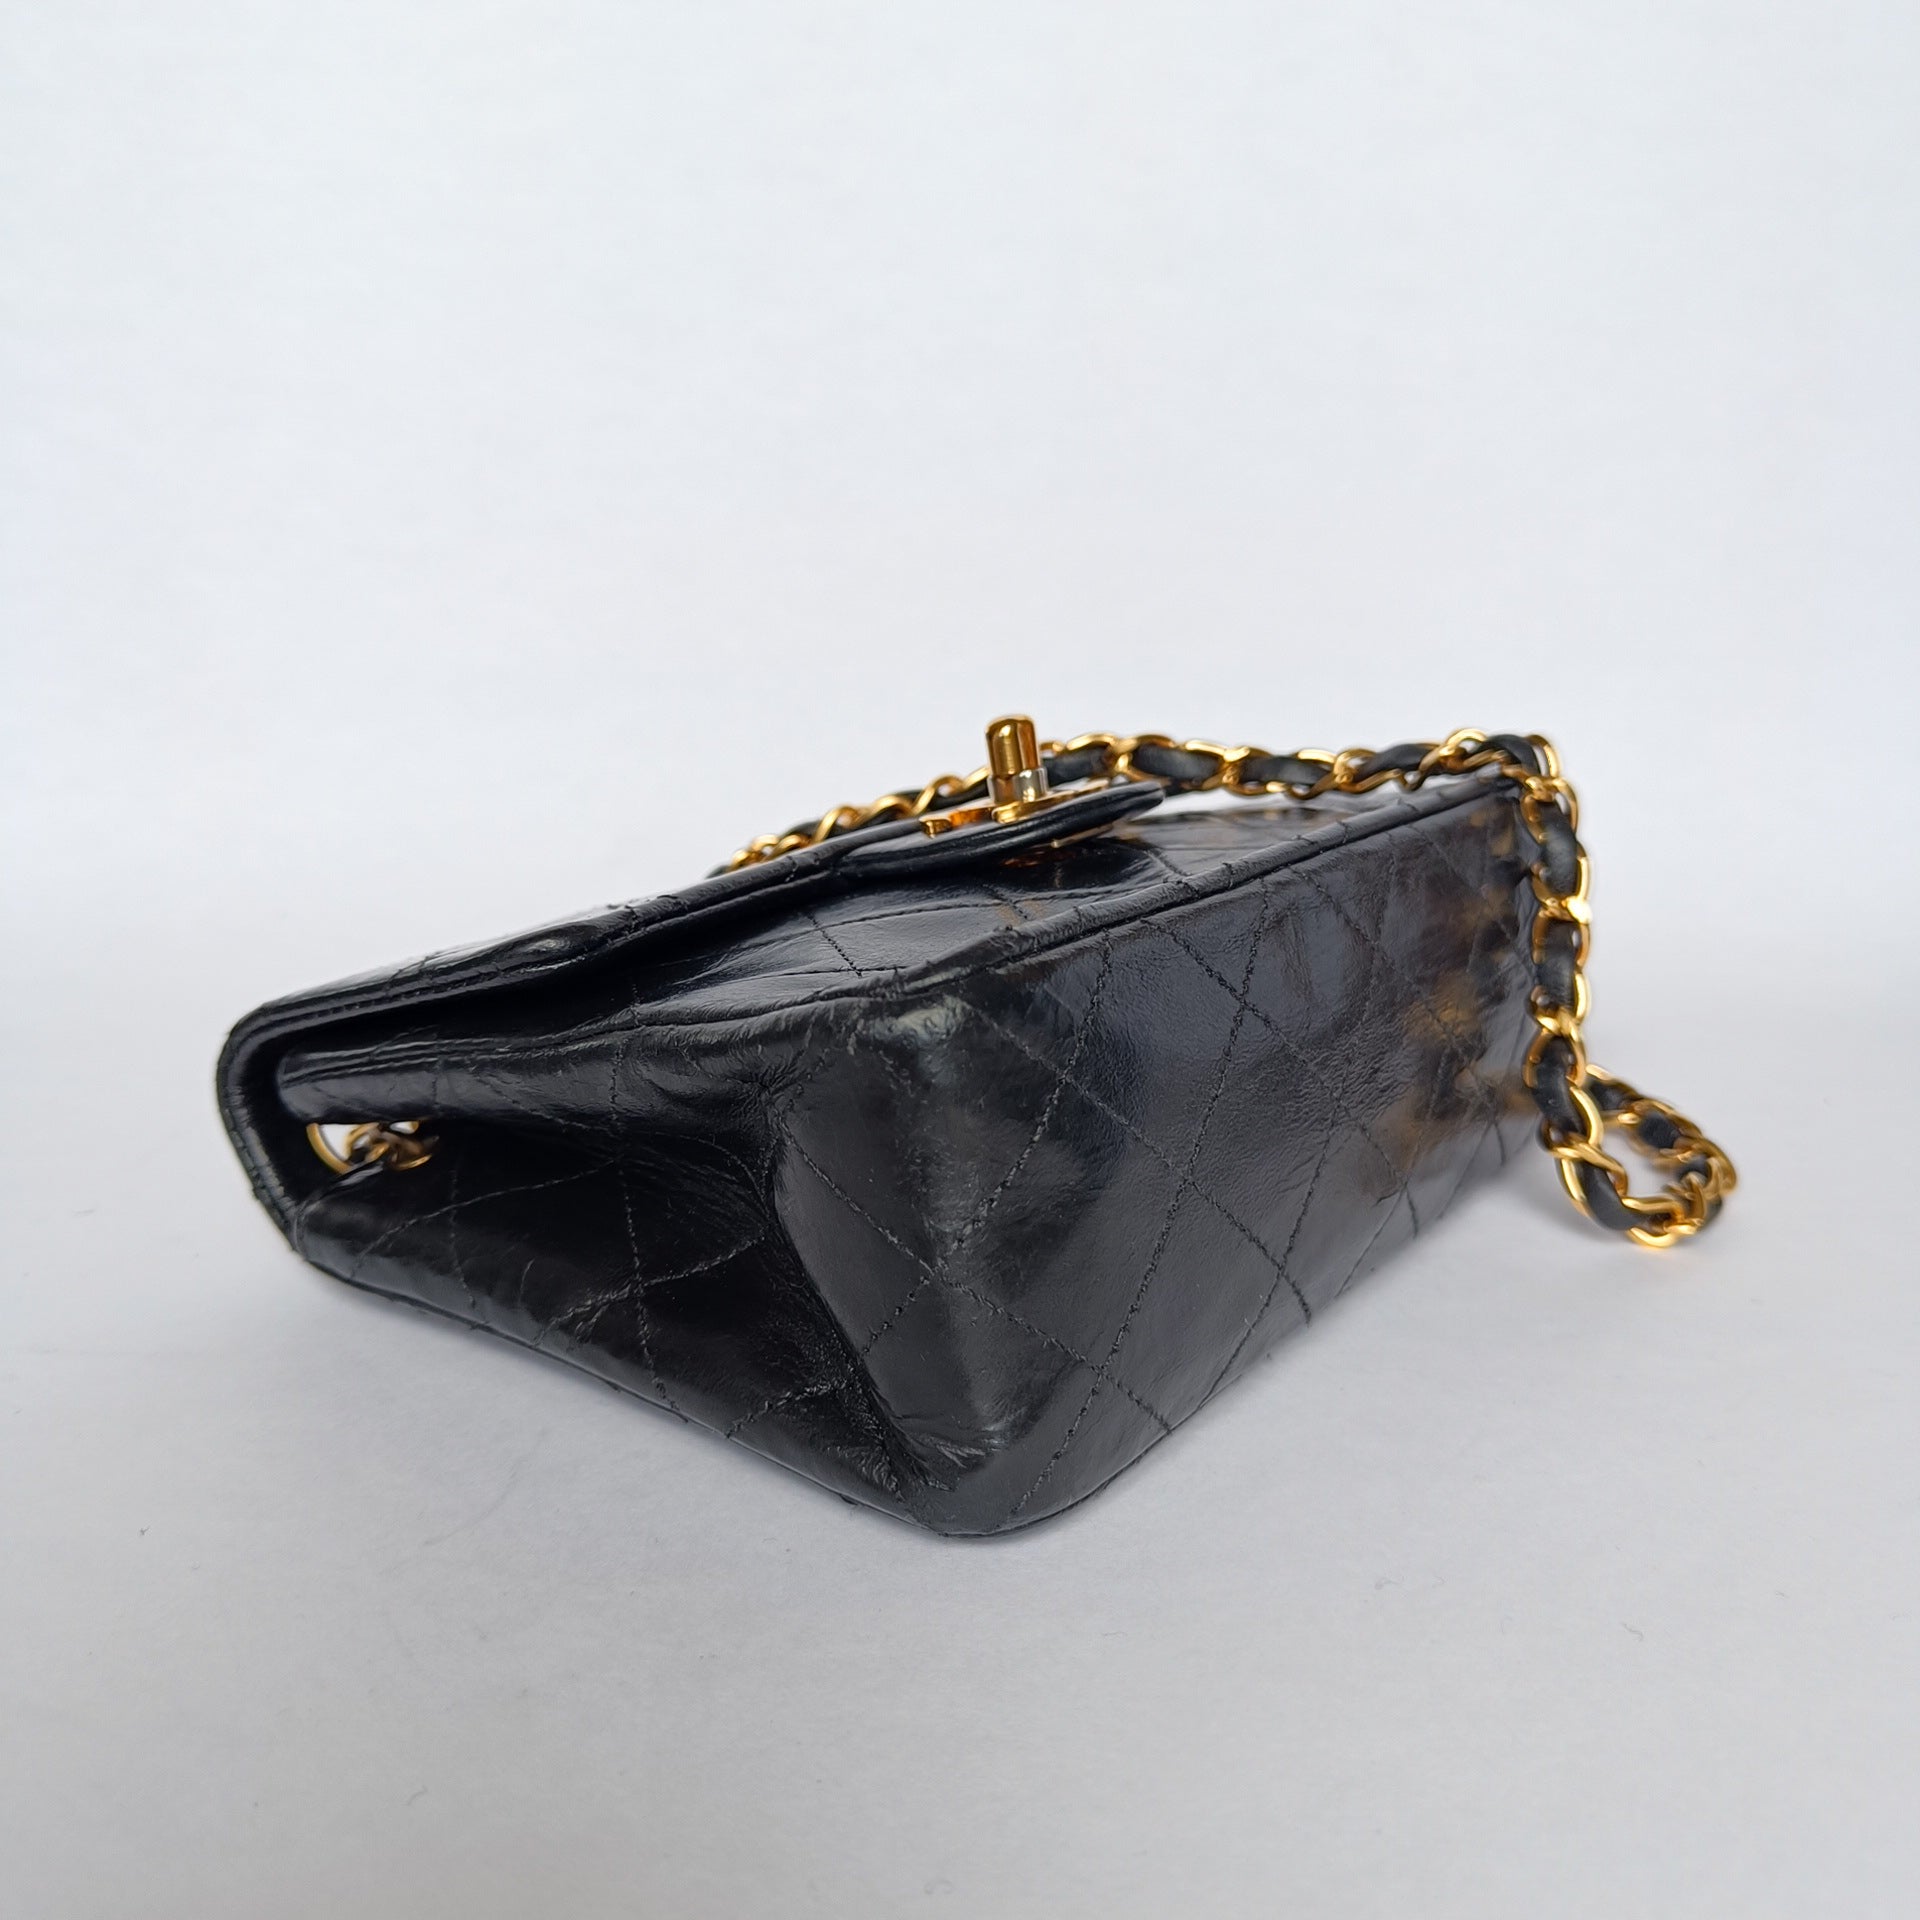 Chanel Patent Mini Square Classic Single Flap Bag - Black